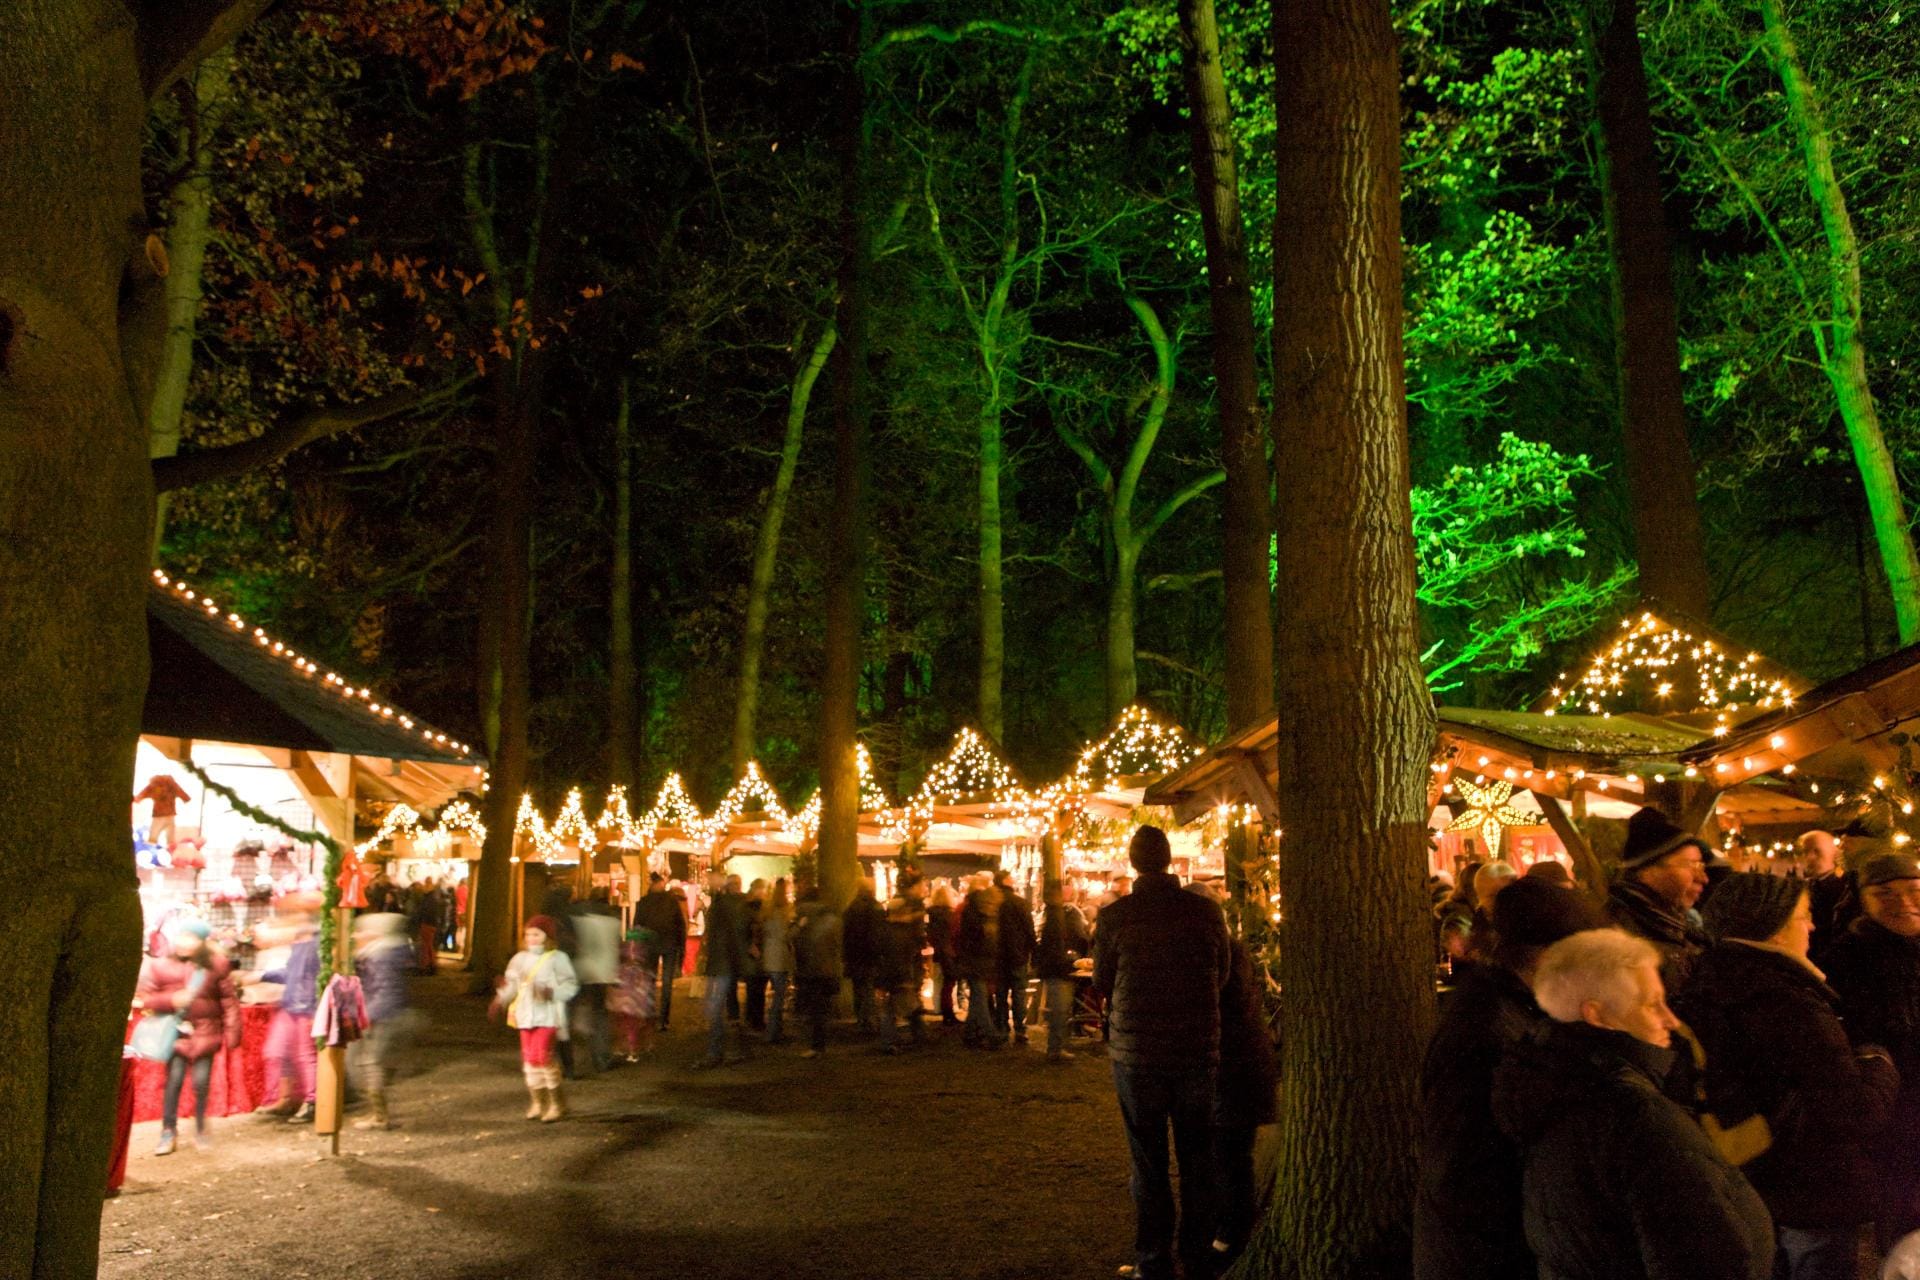 Weihnachten im Wald: Der Weihnachtsmarkt auf dem Landgut Krumme in Velen findet in romantischer Atmosphäre statt.